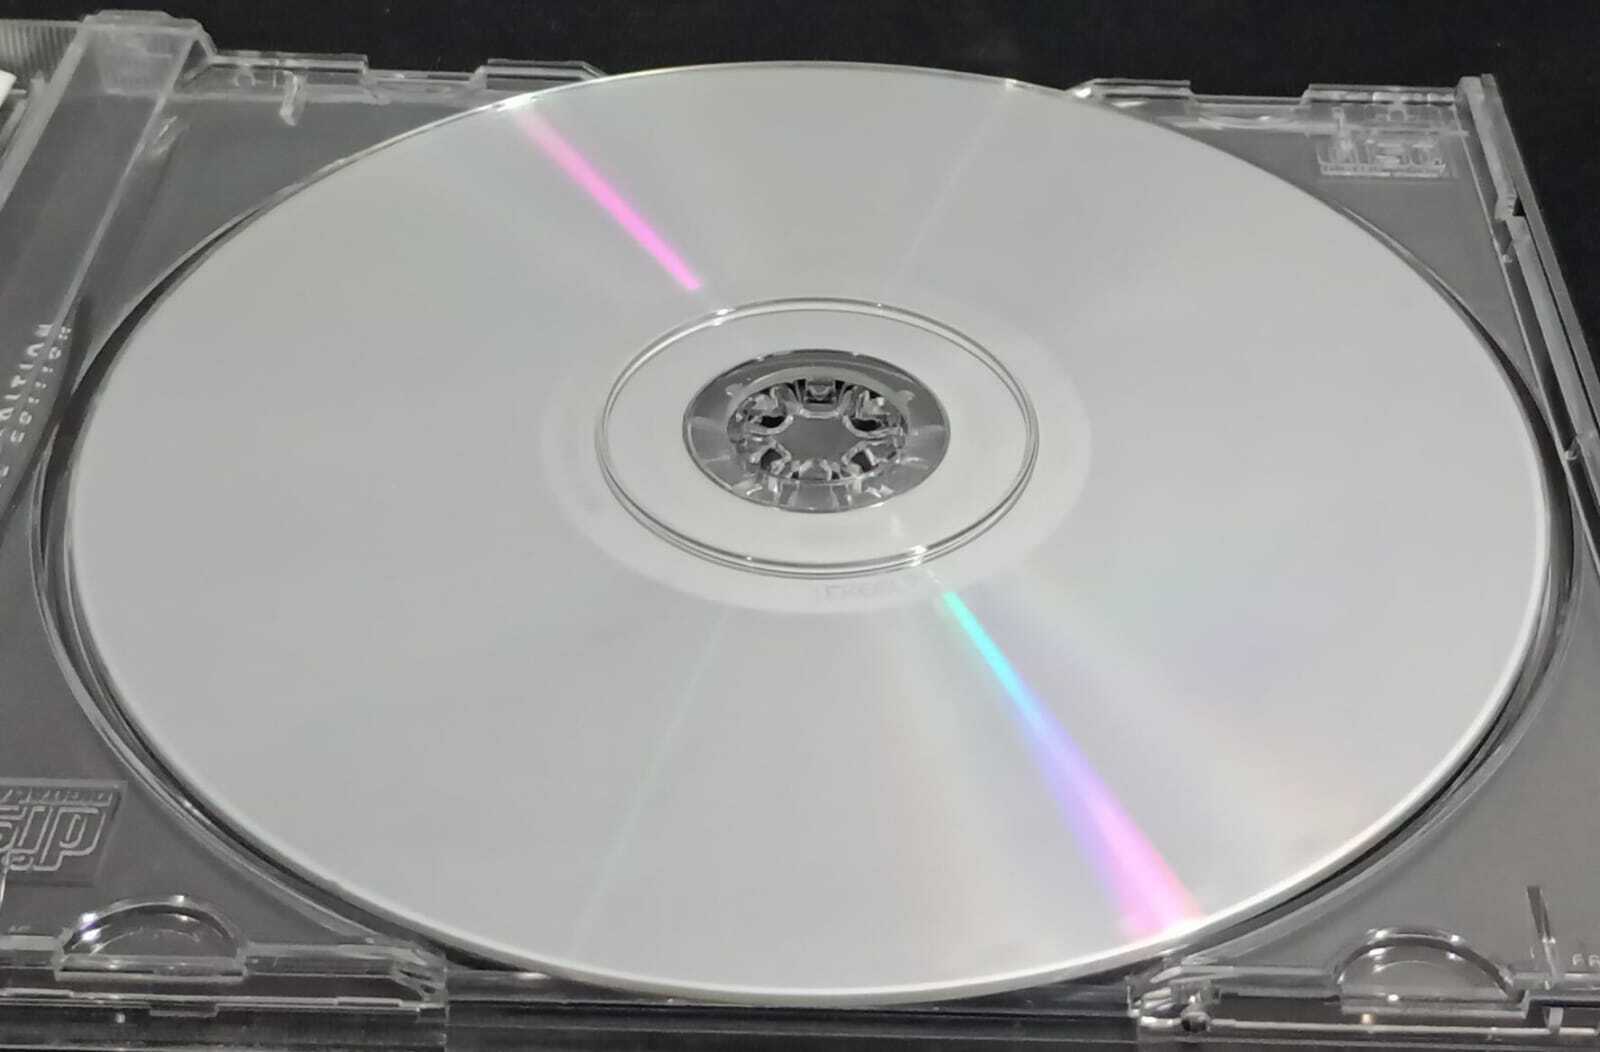 CD - Michael Jackson - Bad (USA)